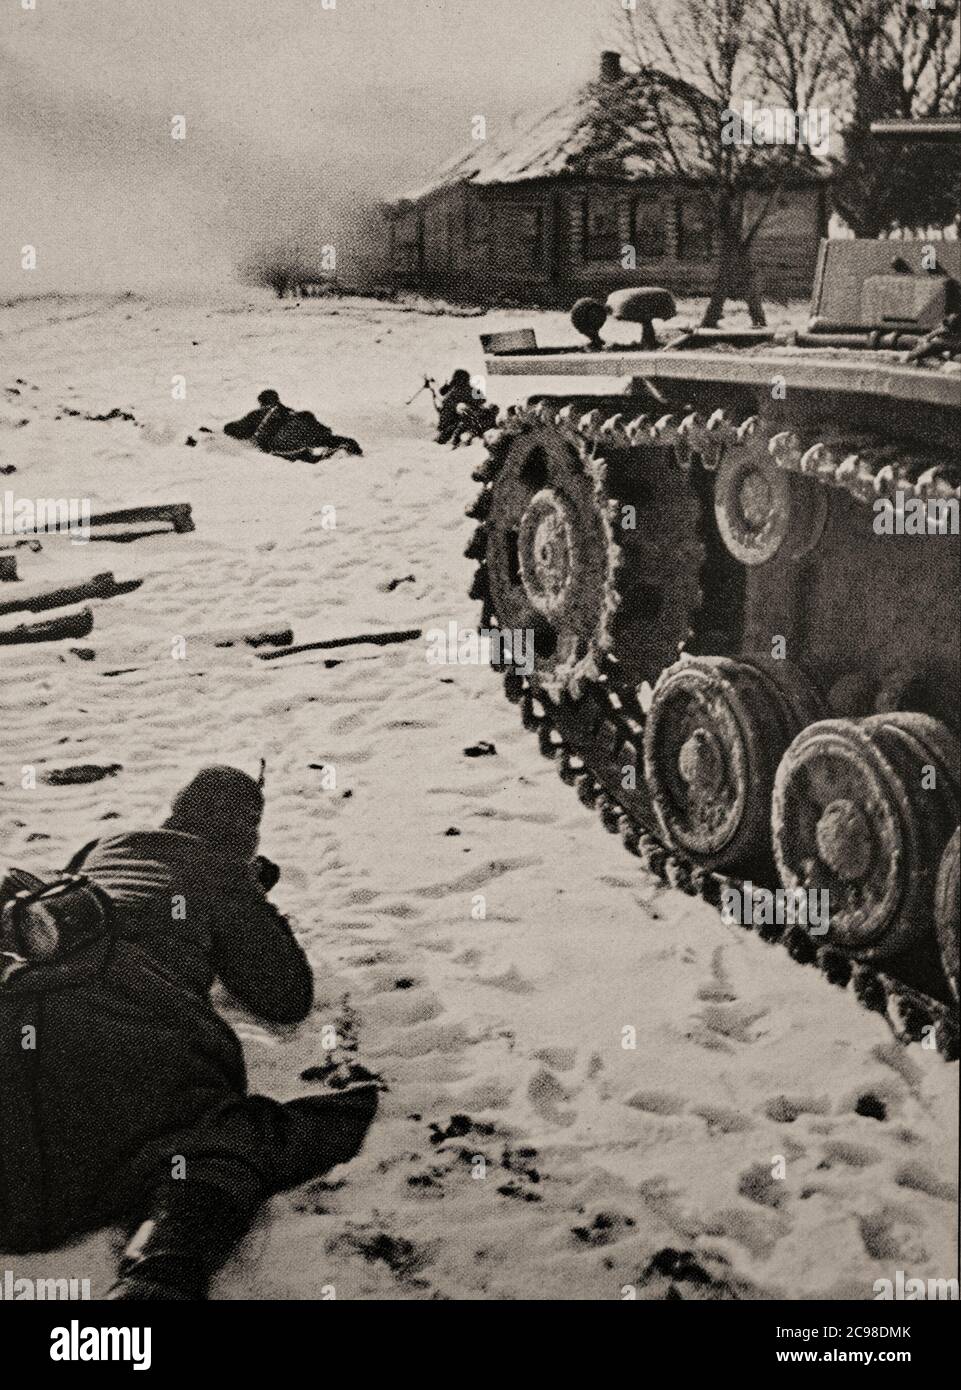 Soldati tedeschi durante la battaglia di Stalingrado (23 agosto 1942 – 2 febbraio 1943), quando la Germania e i suoi alleati combattevano l'Unione Sovietica per il controllo della città di Stalingrado (ora Volgograd) nella Russia meridionale. Segnata da combattimenti ravvicinati e attacchi diretti ai civili in incursioni aeree, è stata una delle battaglie più sanguinose della storia della guerra, con circa 2 milioni di vittime totali. Foto Stock